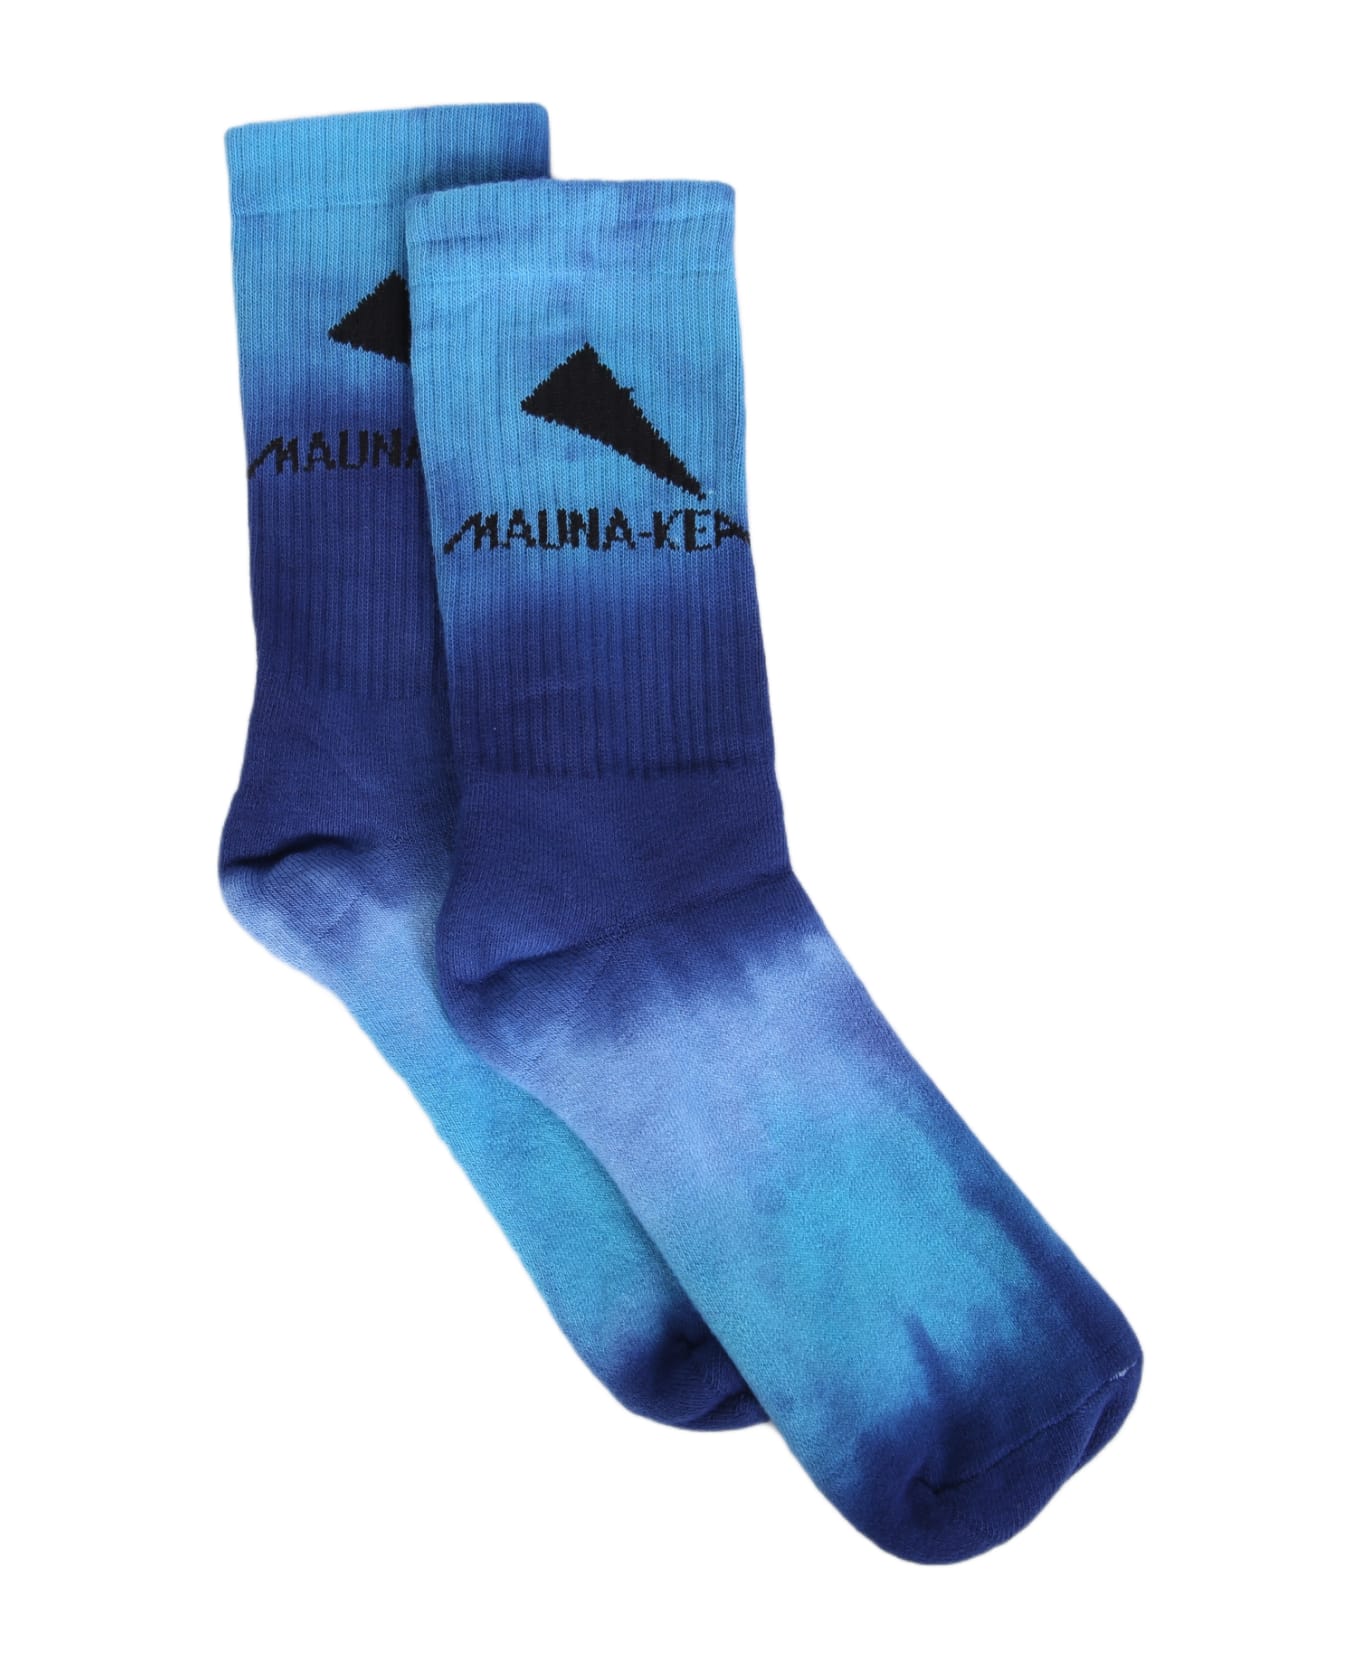 Mauna Kea Tie Dye Socks - Multi